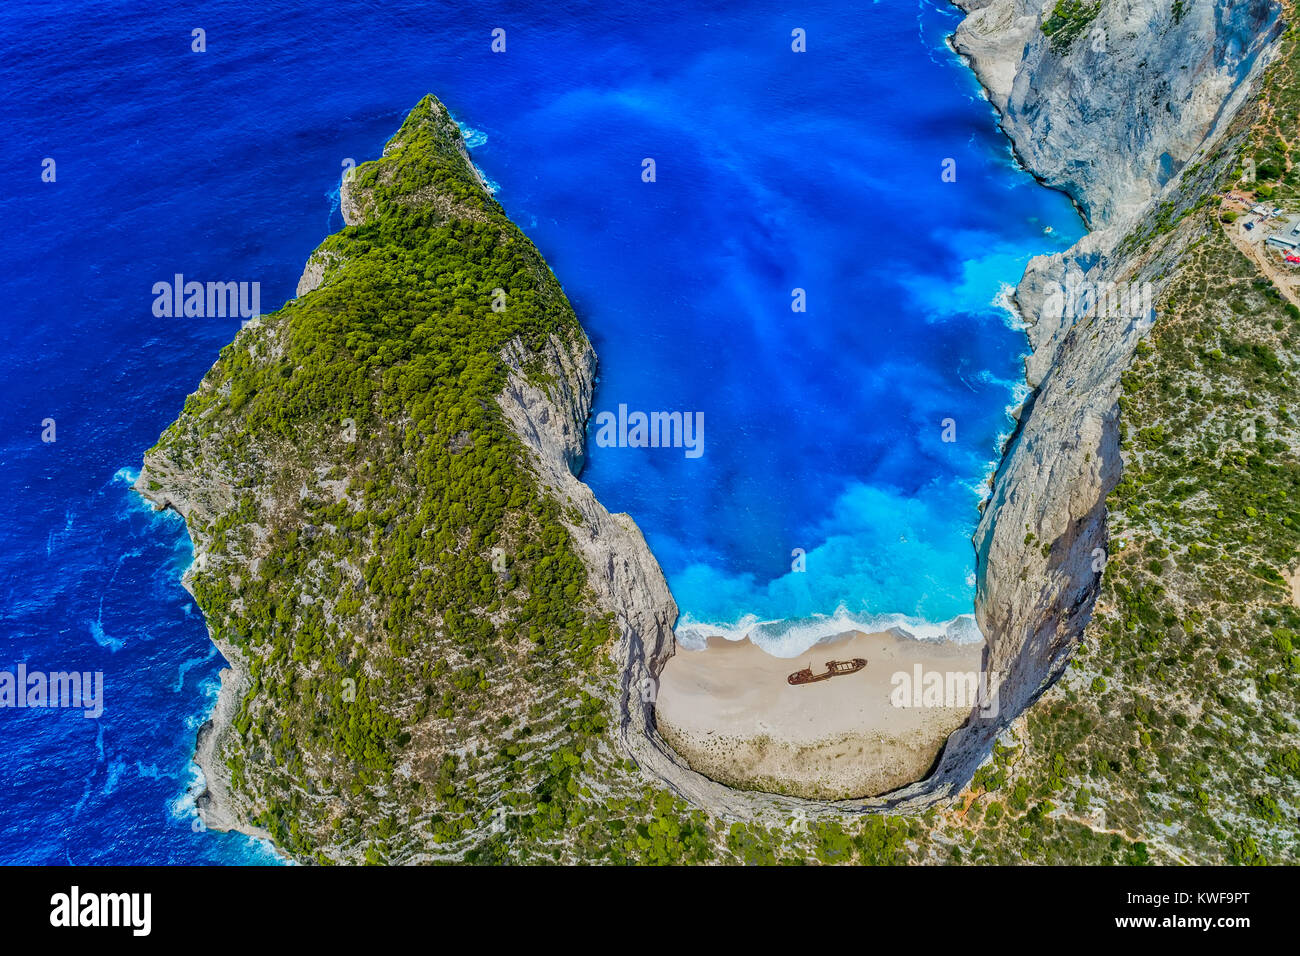 Vue aérienne de la plage de Navagio (naufrage) dans l'île de Zakynthos, Grèce. Plage de Navagio est une attraction populaire parmi les touristes visitant l'île de Zaky Banque D'Images